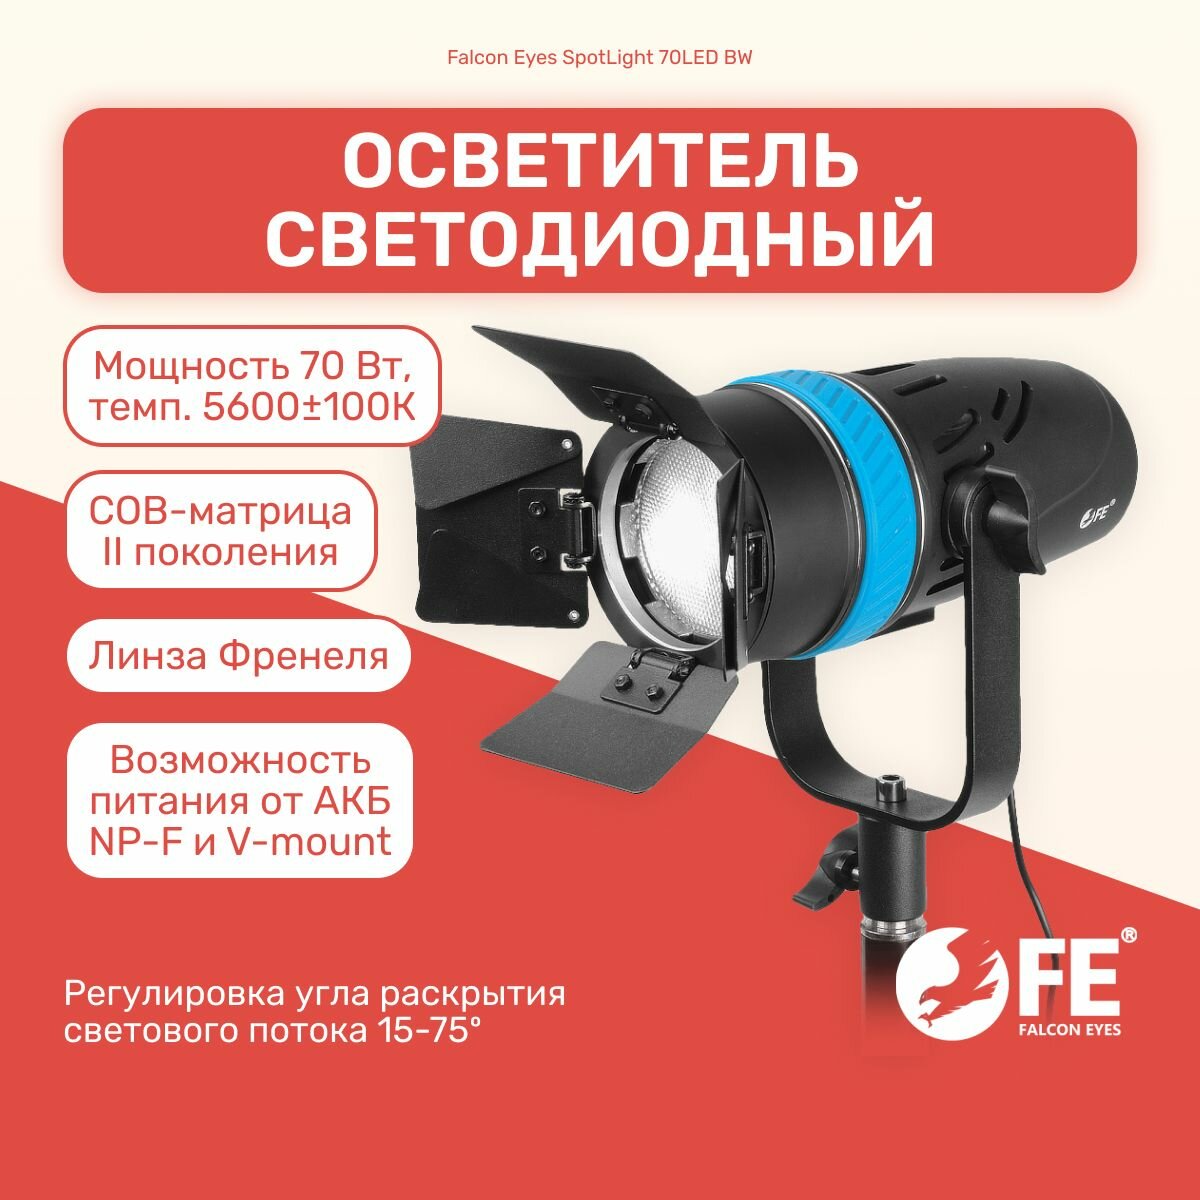 Осветитель Falcon Eyes SpotLight 70LED BW + светофильтры в комплекте, свет для фото и видео съемки, видеосвет